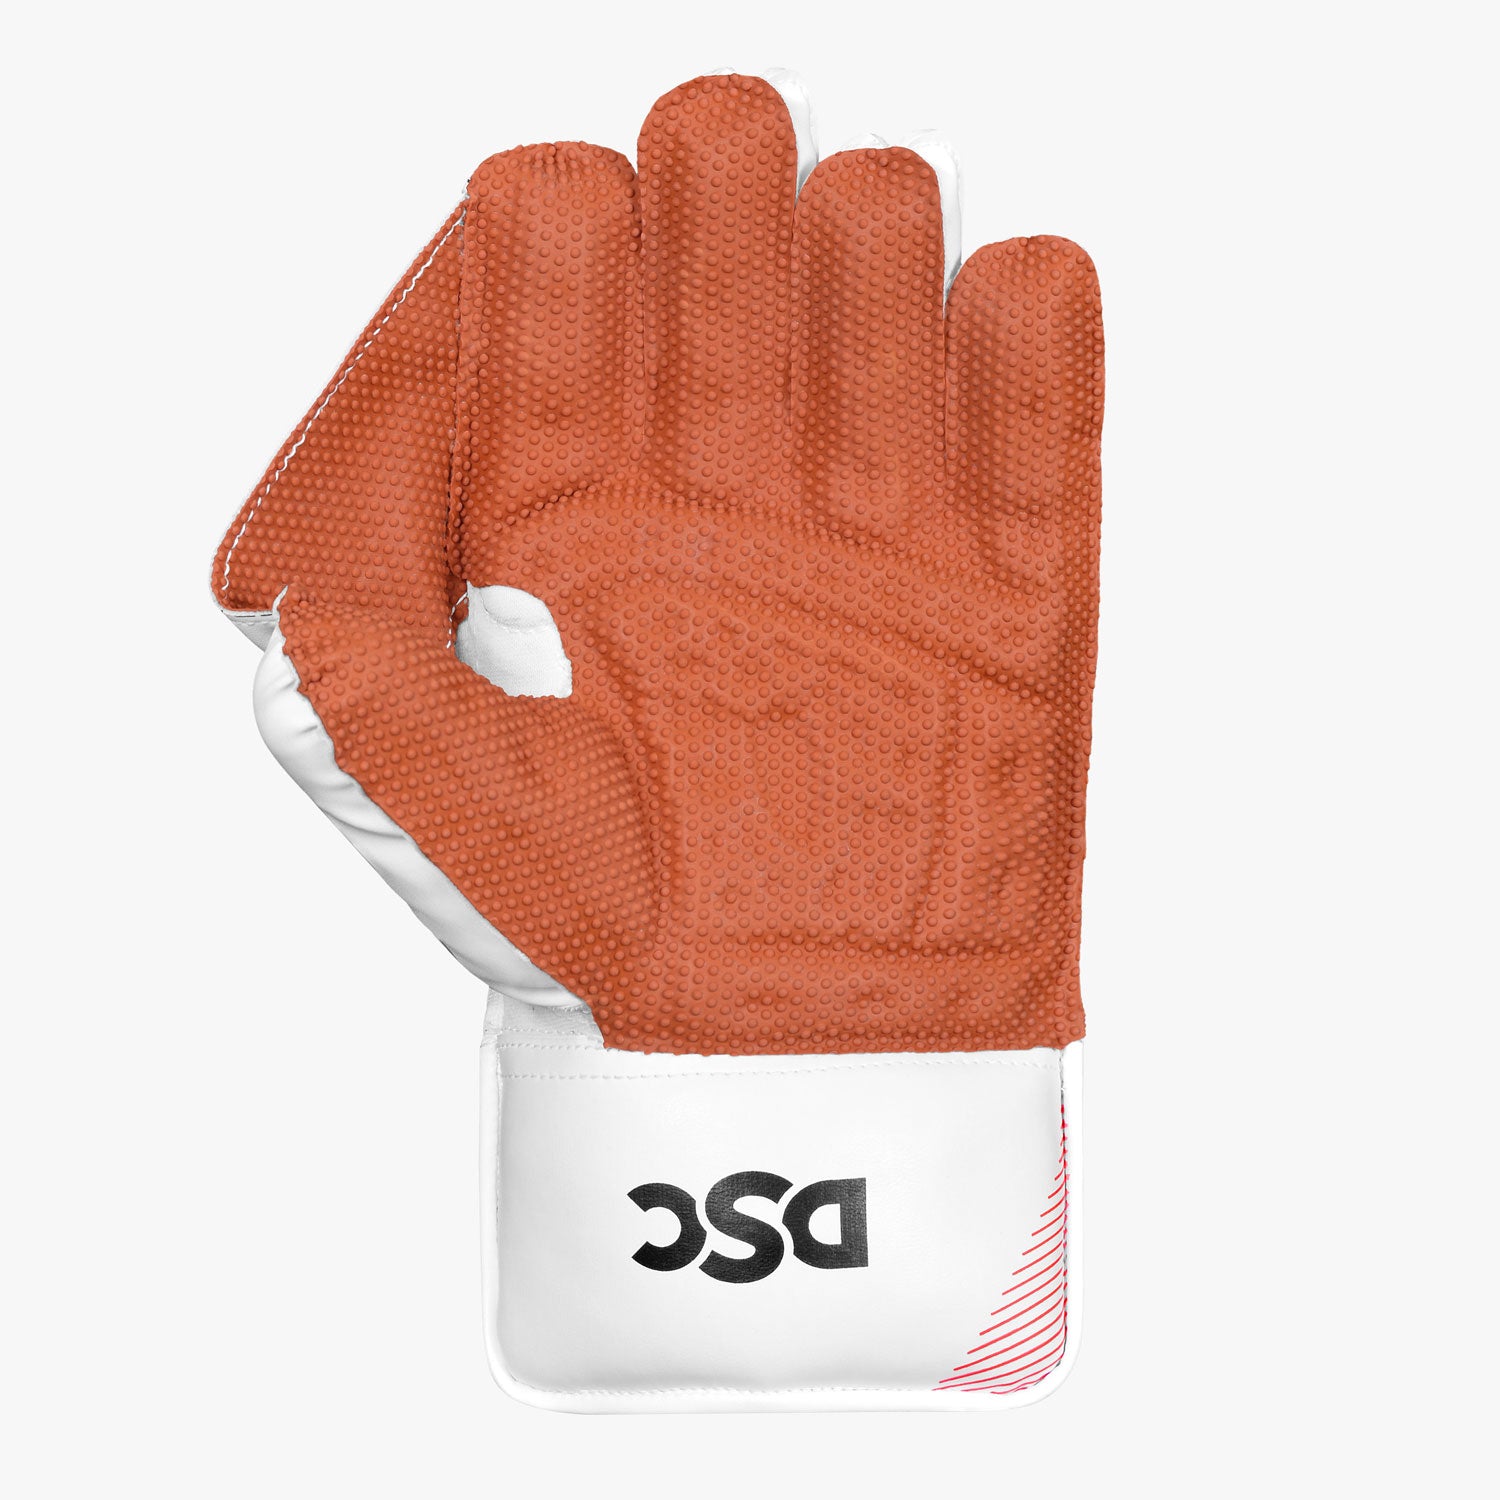 DSC Krunch 7000 Wicket Keeping Gloves